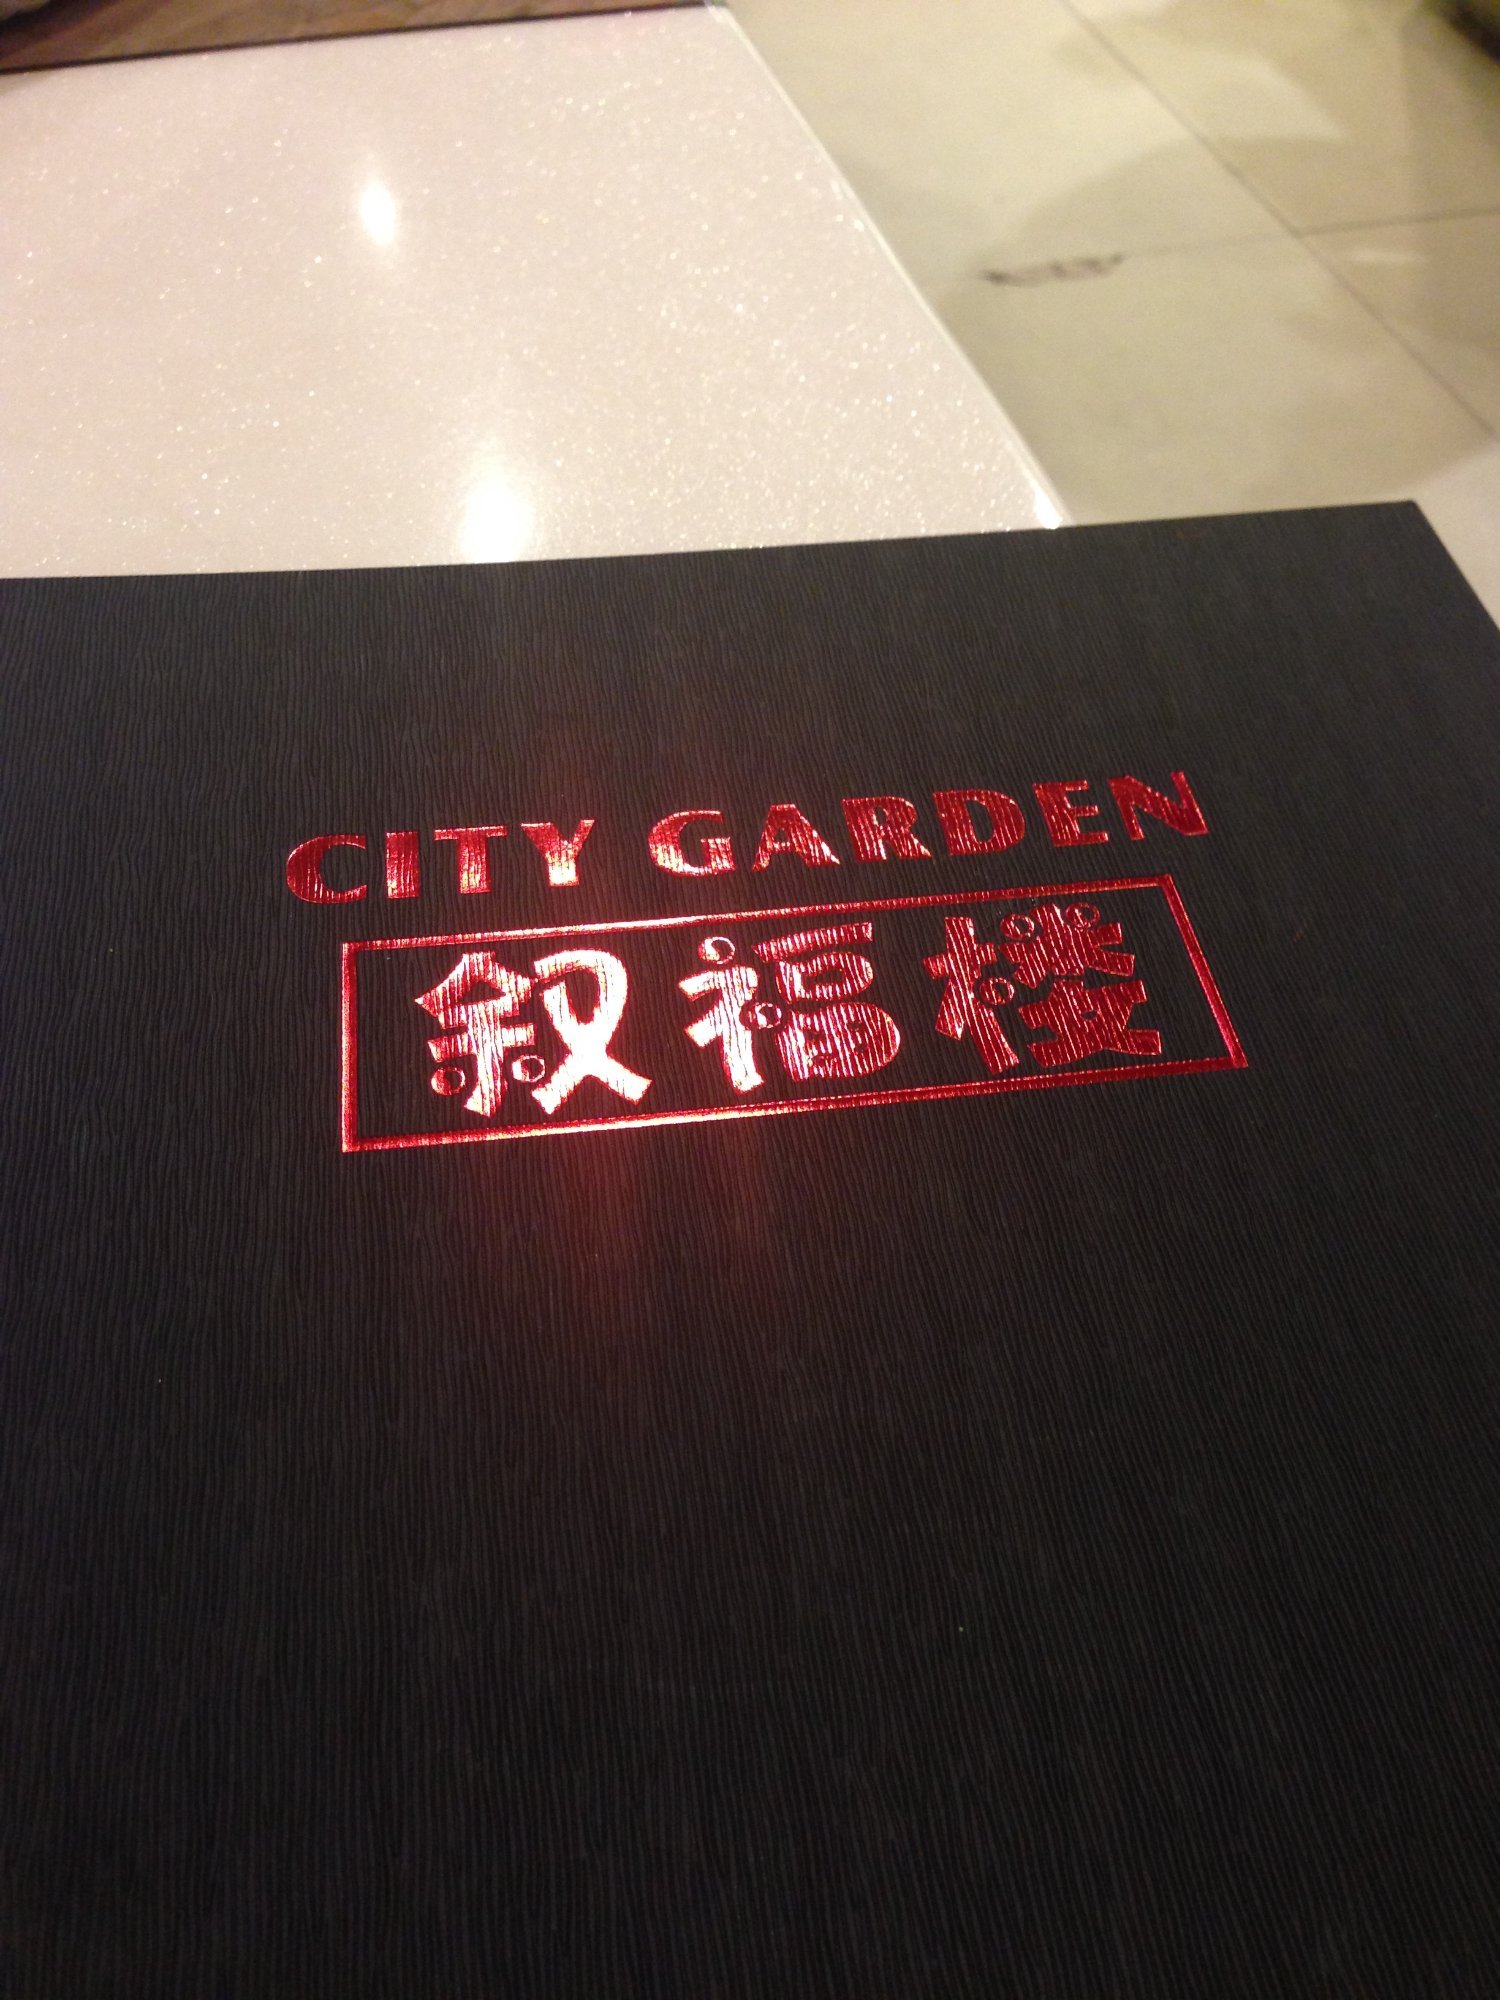 City Garden Chinese Restaurant - thumb 7